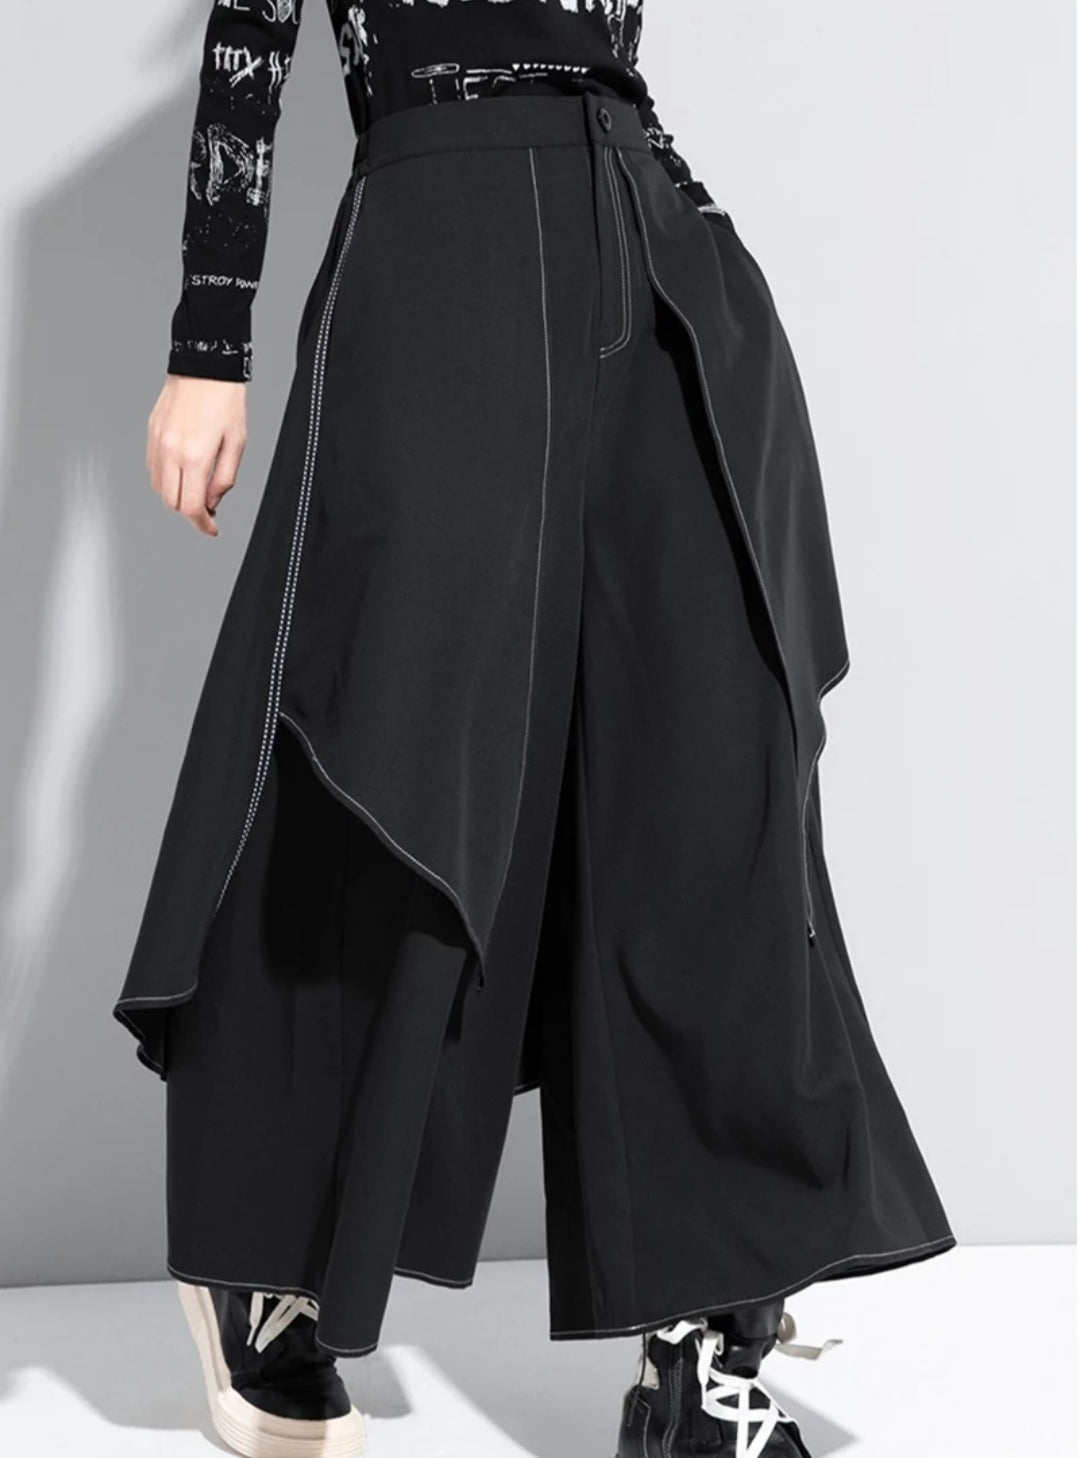 Samurai Style Black Cotton Drop Crotch Harem Pants Women, Plus